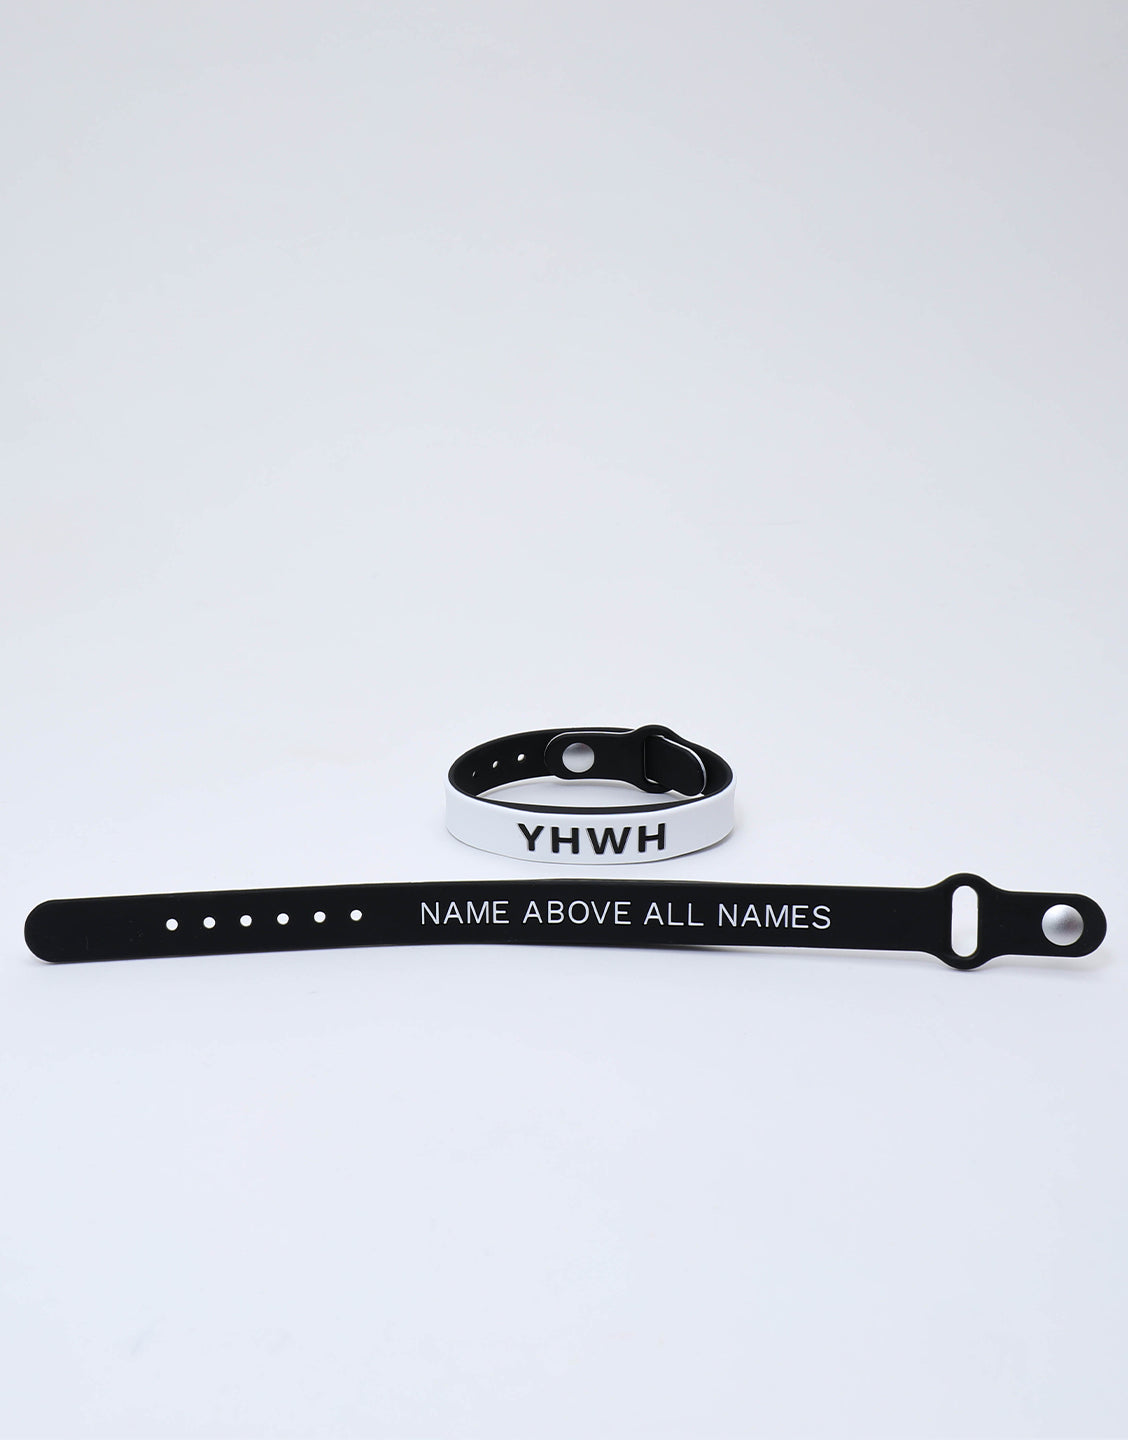 YHWH Premium Silicone Wristband + Free Velvet Pouch- Black/White